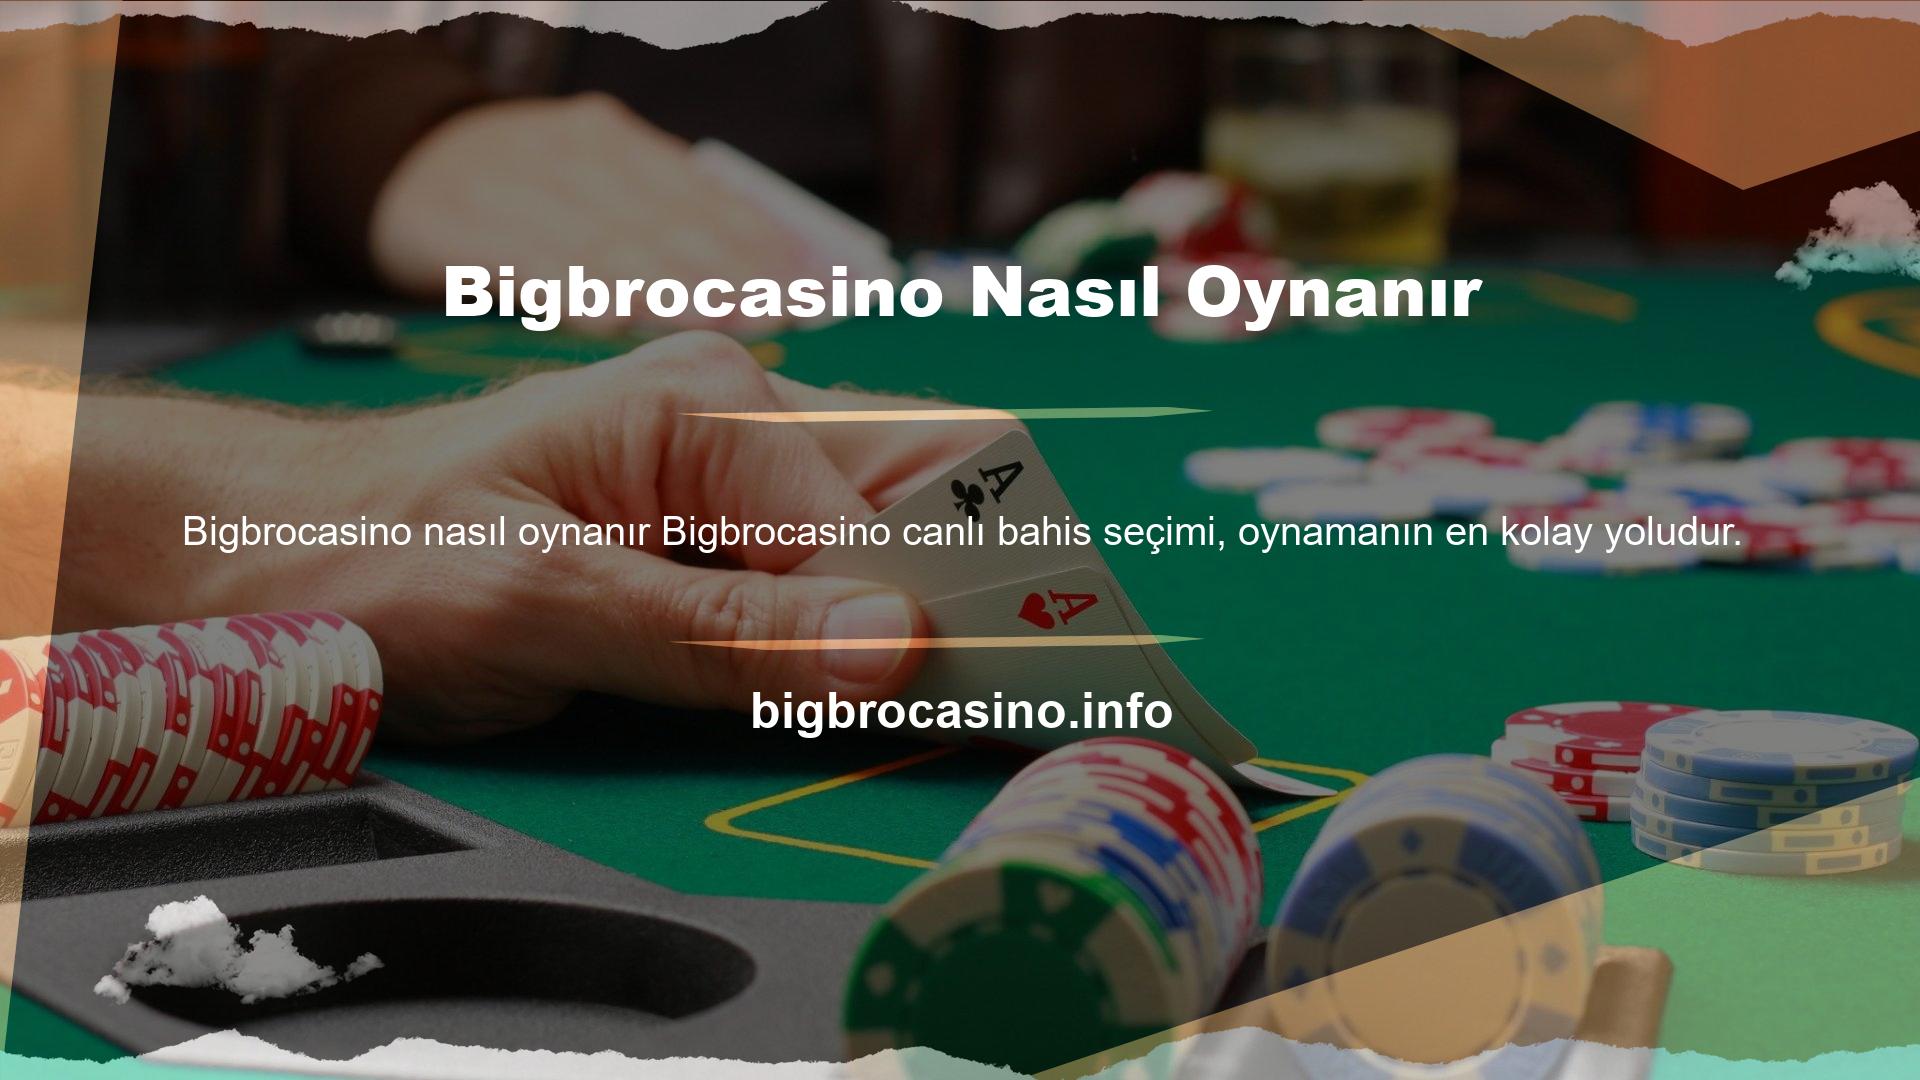 Bu konuda iyi performans gösteren casinolar bir an önce Bigbrocasino levreğine geçmeyi hedefliyor